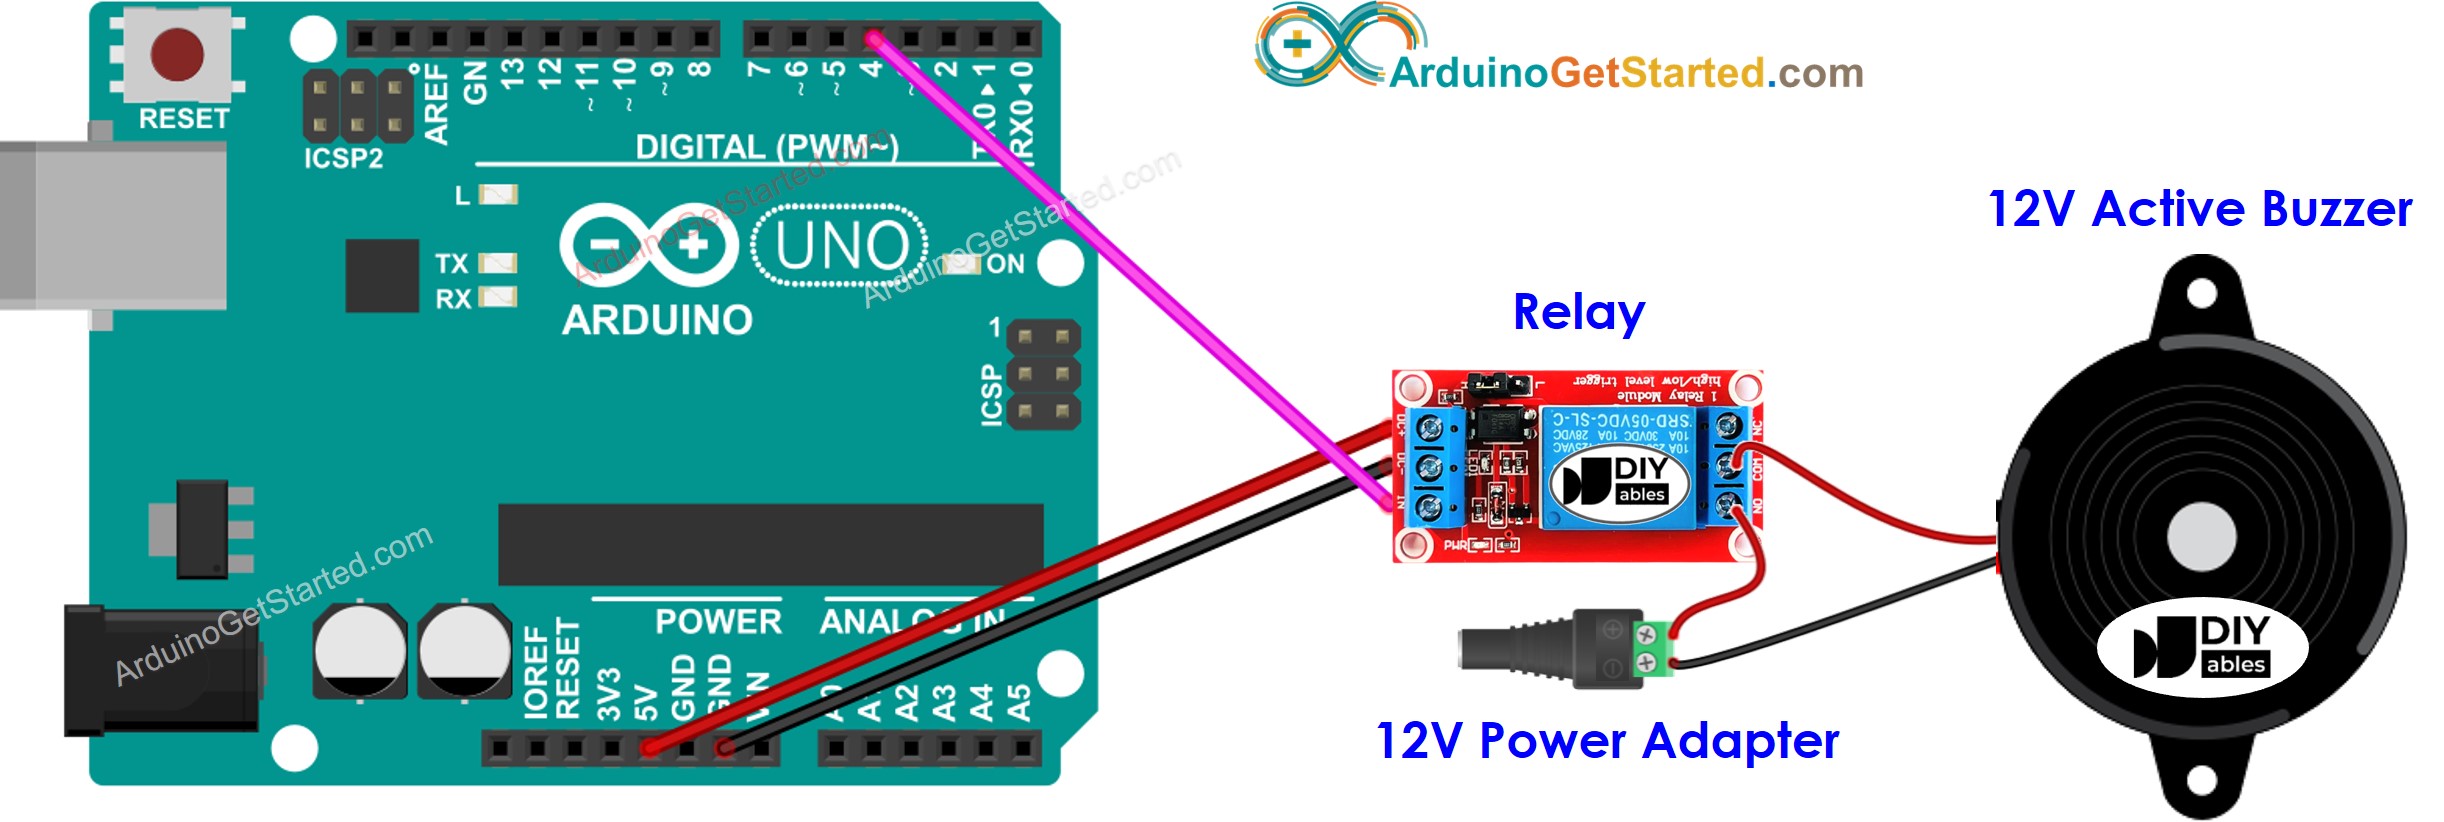 Arduino 12V Active Buzzer Wiring Diagram